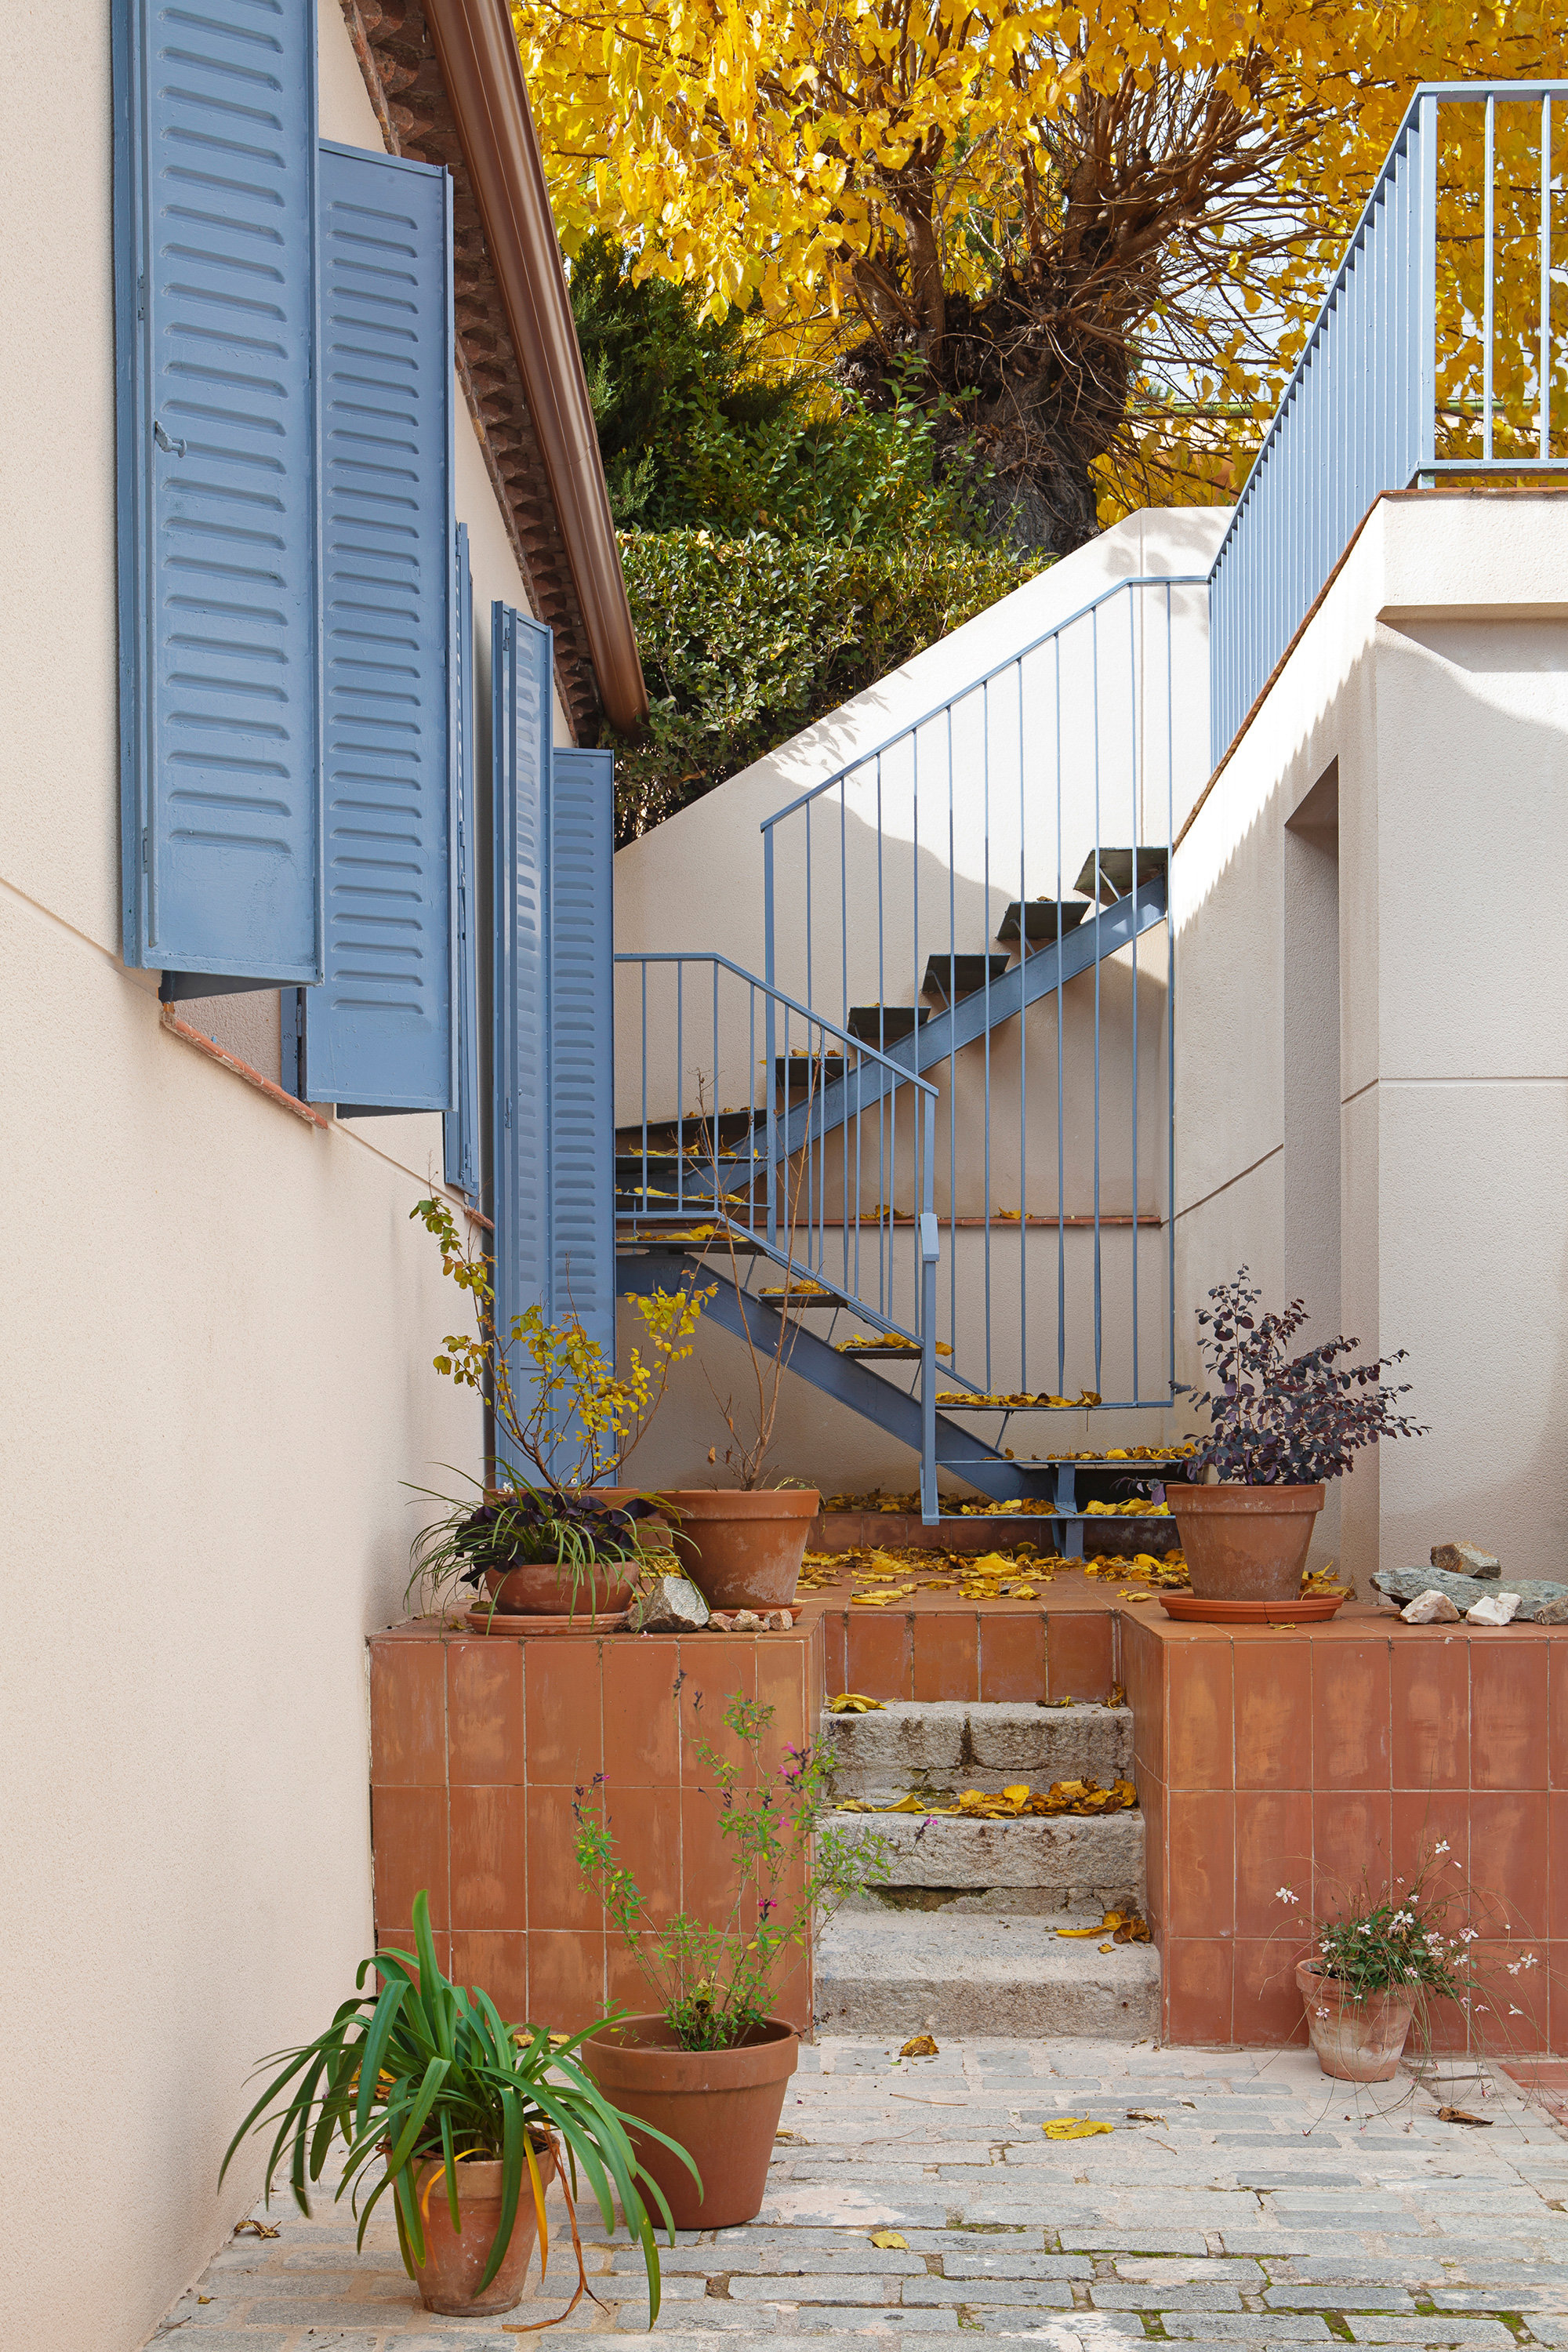 Las paredes blancas del exterior y las contraventanas en azul recuerdan a las casas de pueblos costeros del Mediterráneo.